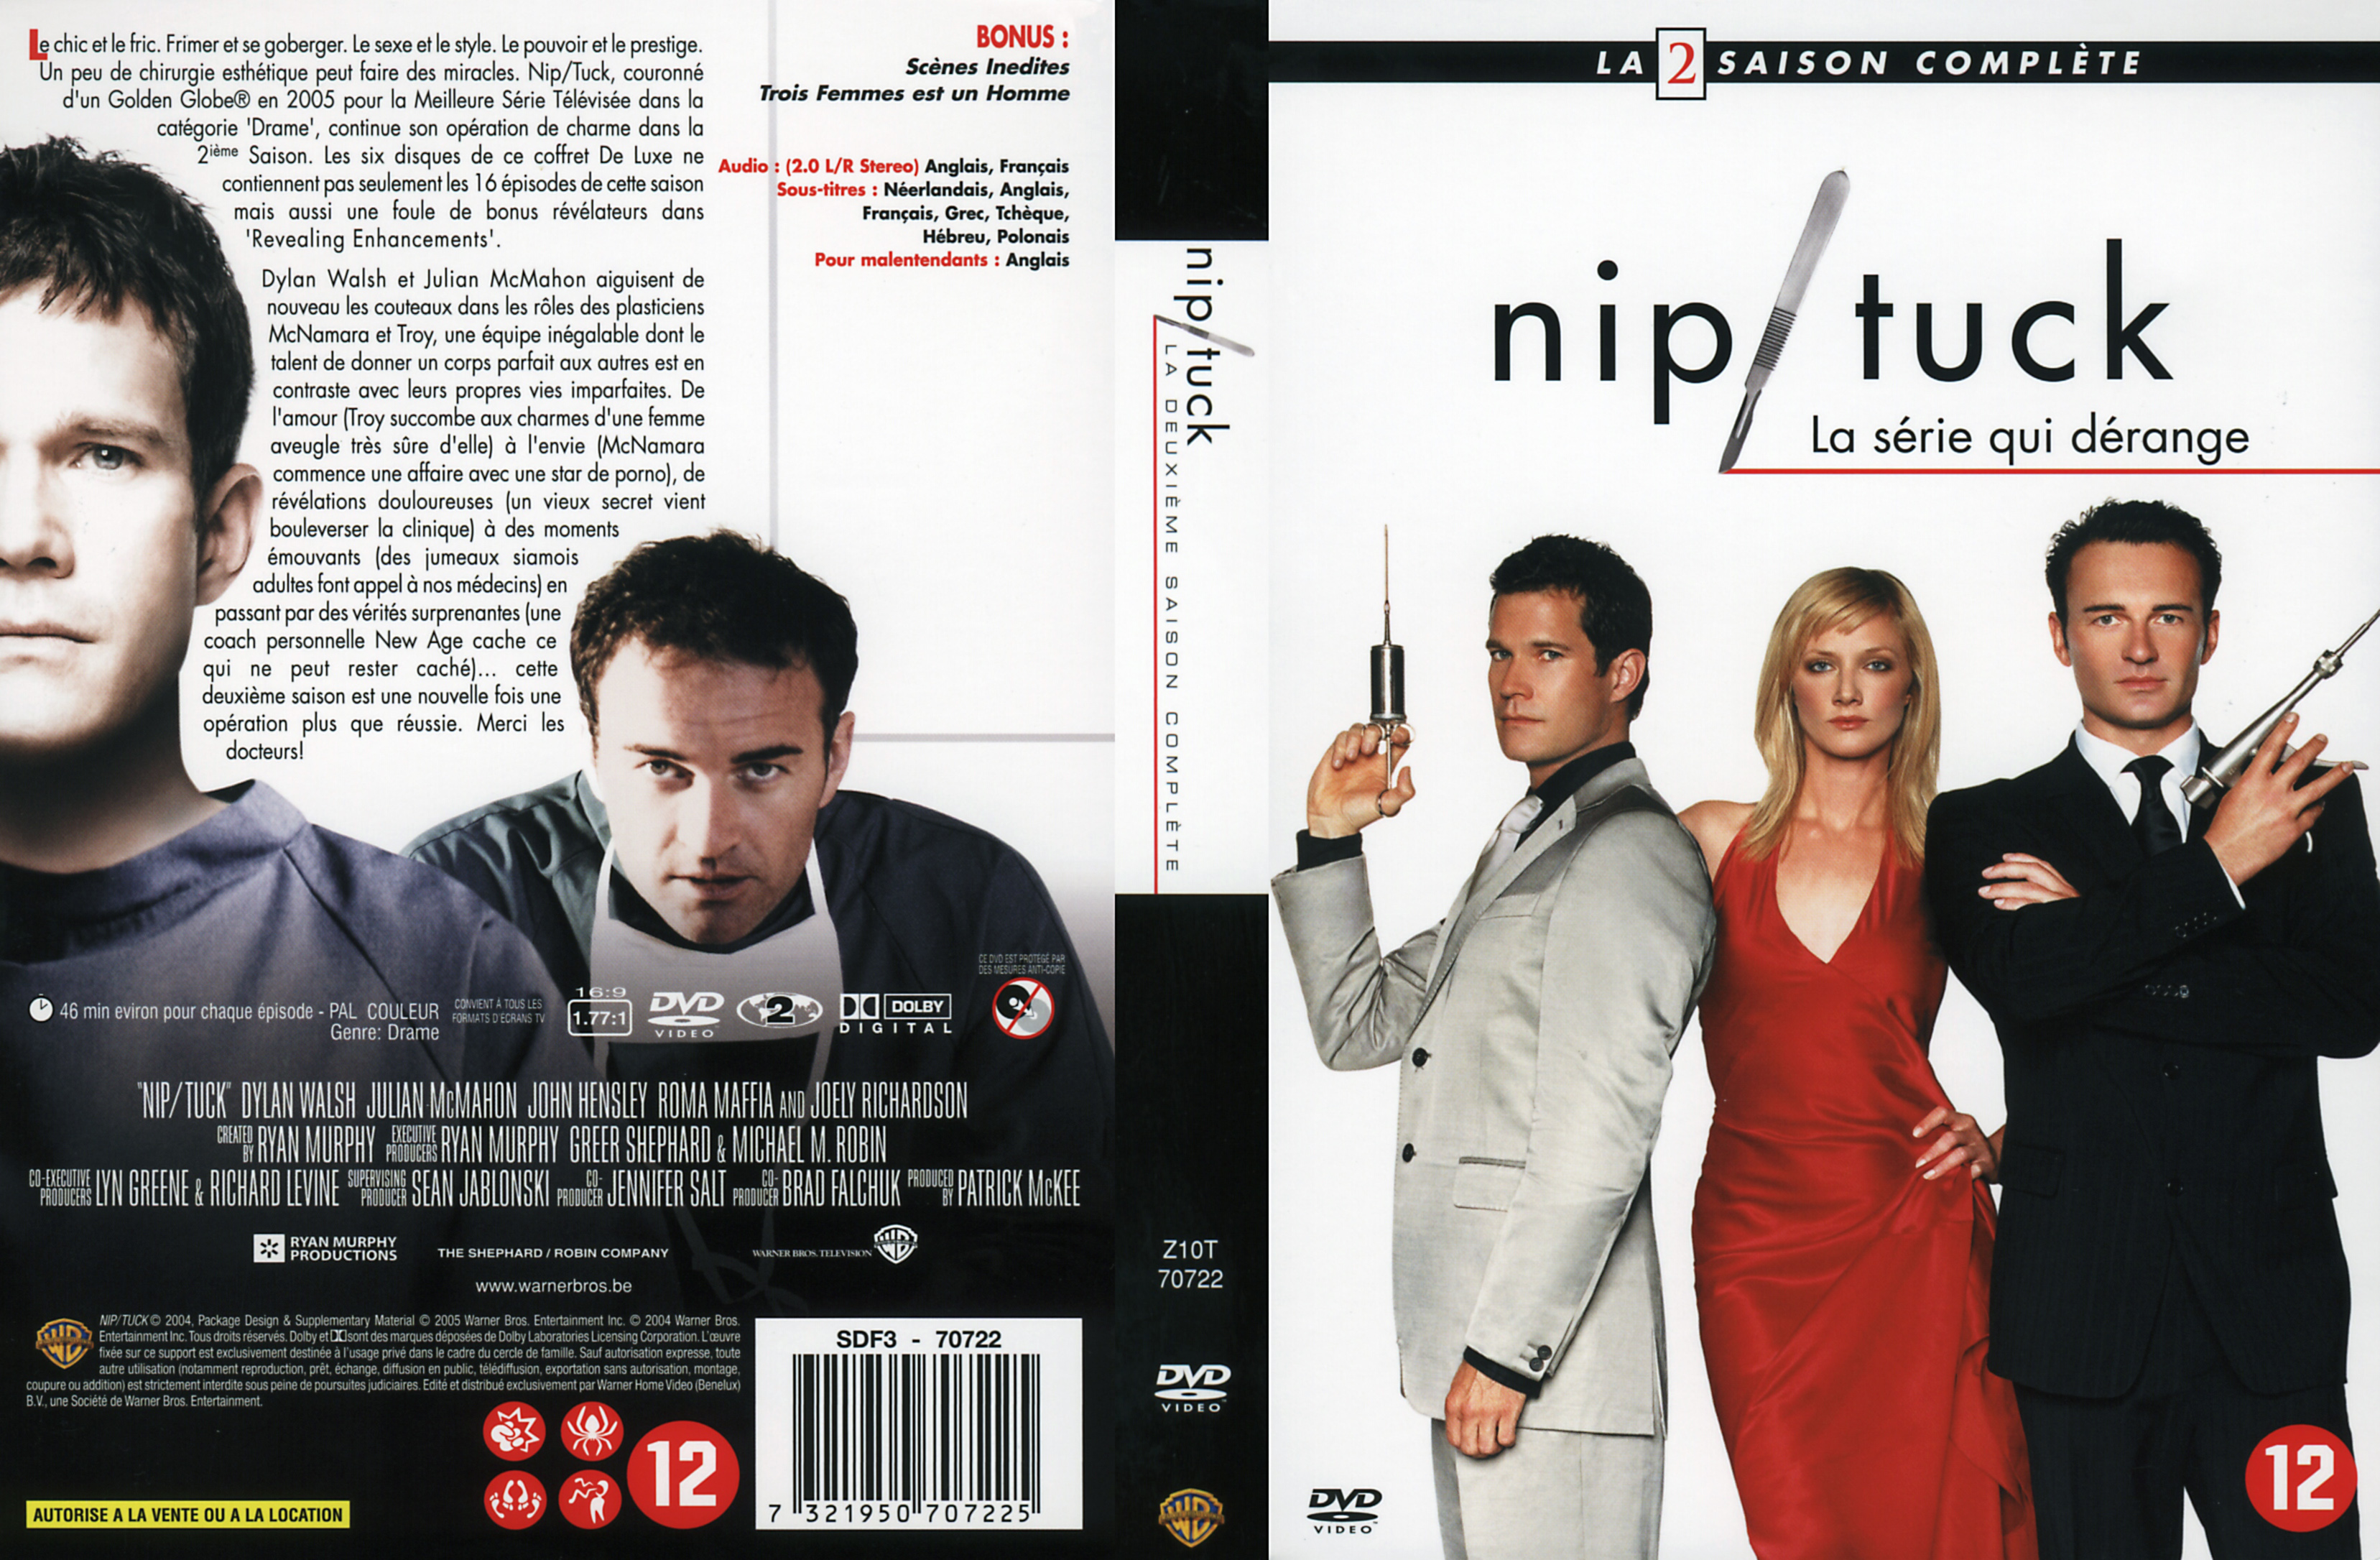 Jaquette DVD Nip-Tuck saison 2 COFFRET